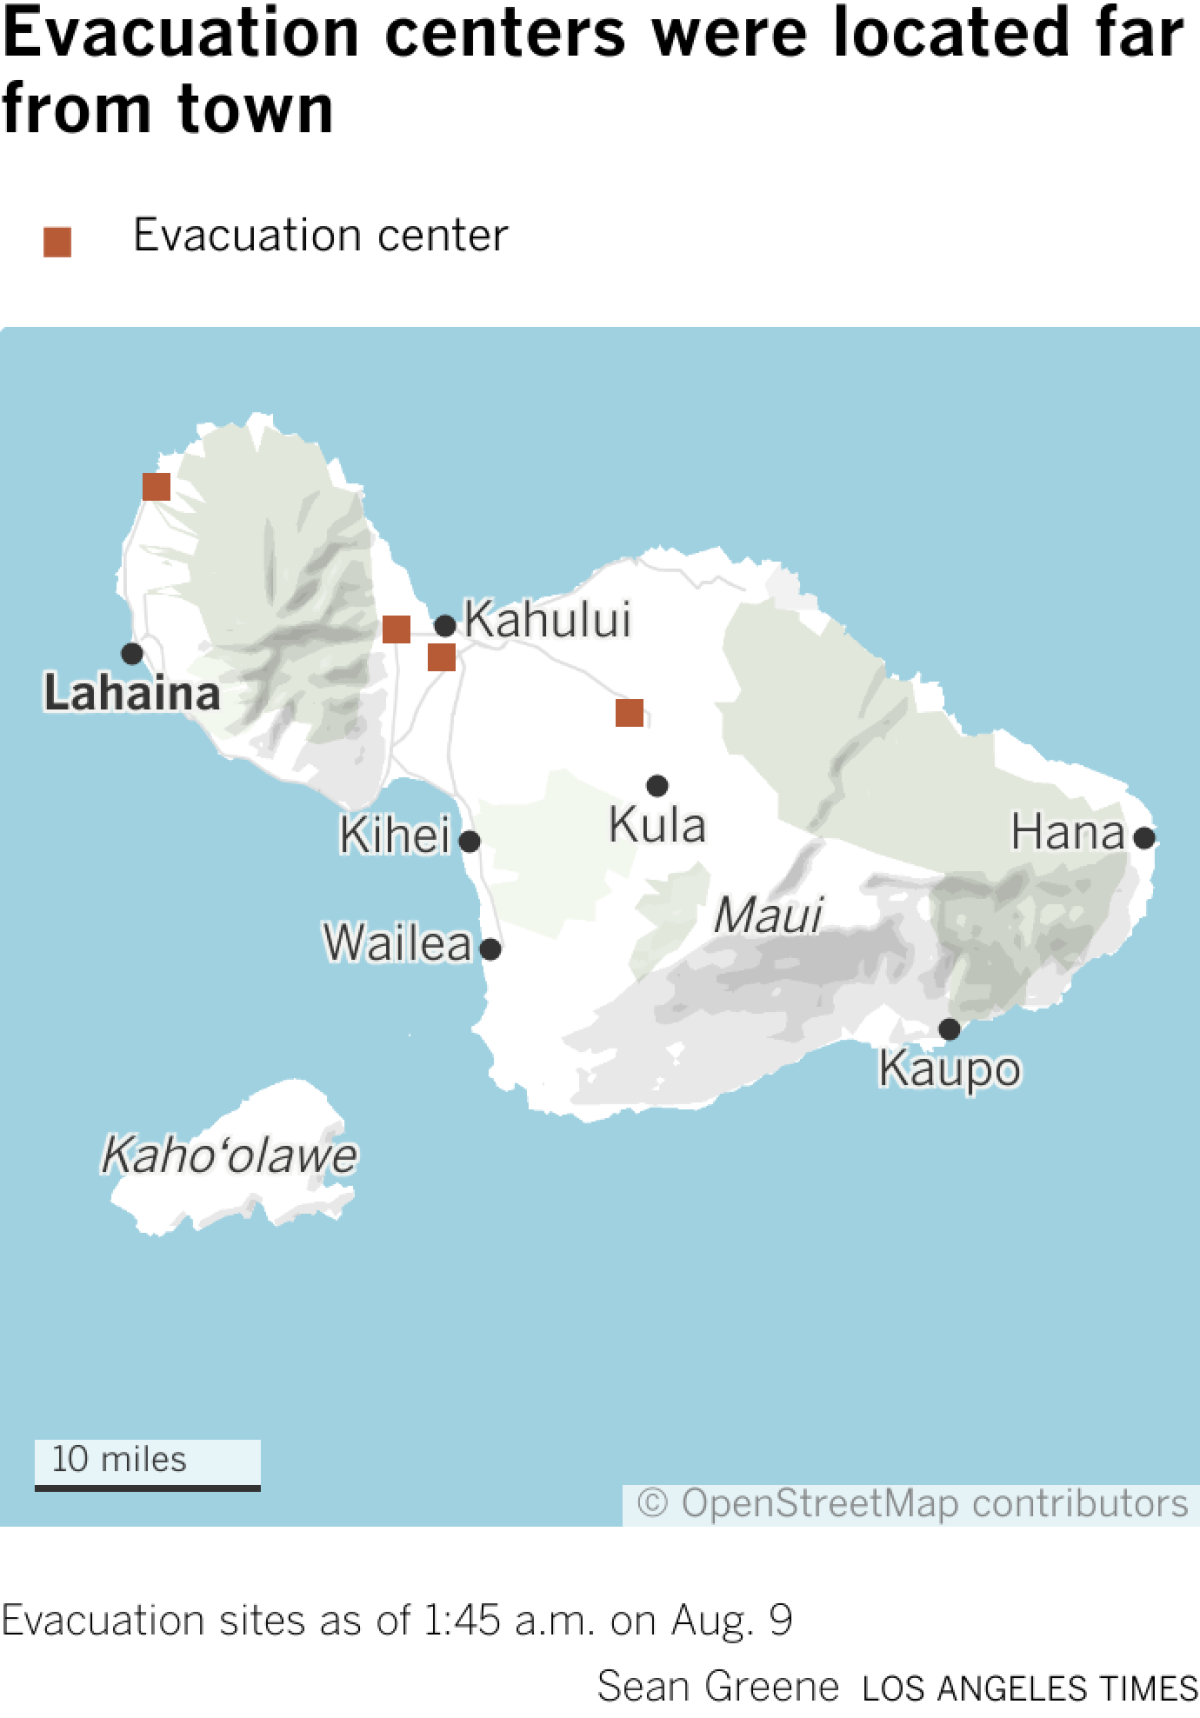 Maui haritası, Lahaina'daki yangından uzakta, adanın kuzey ve orta bölgelerindeki tahliye merkezlerini gösteriyor.